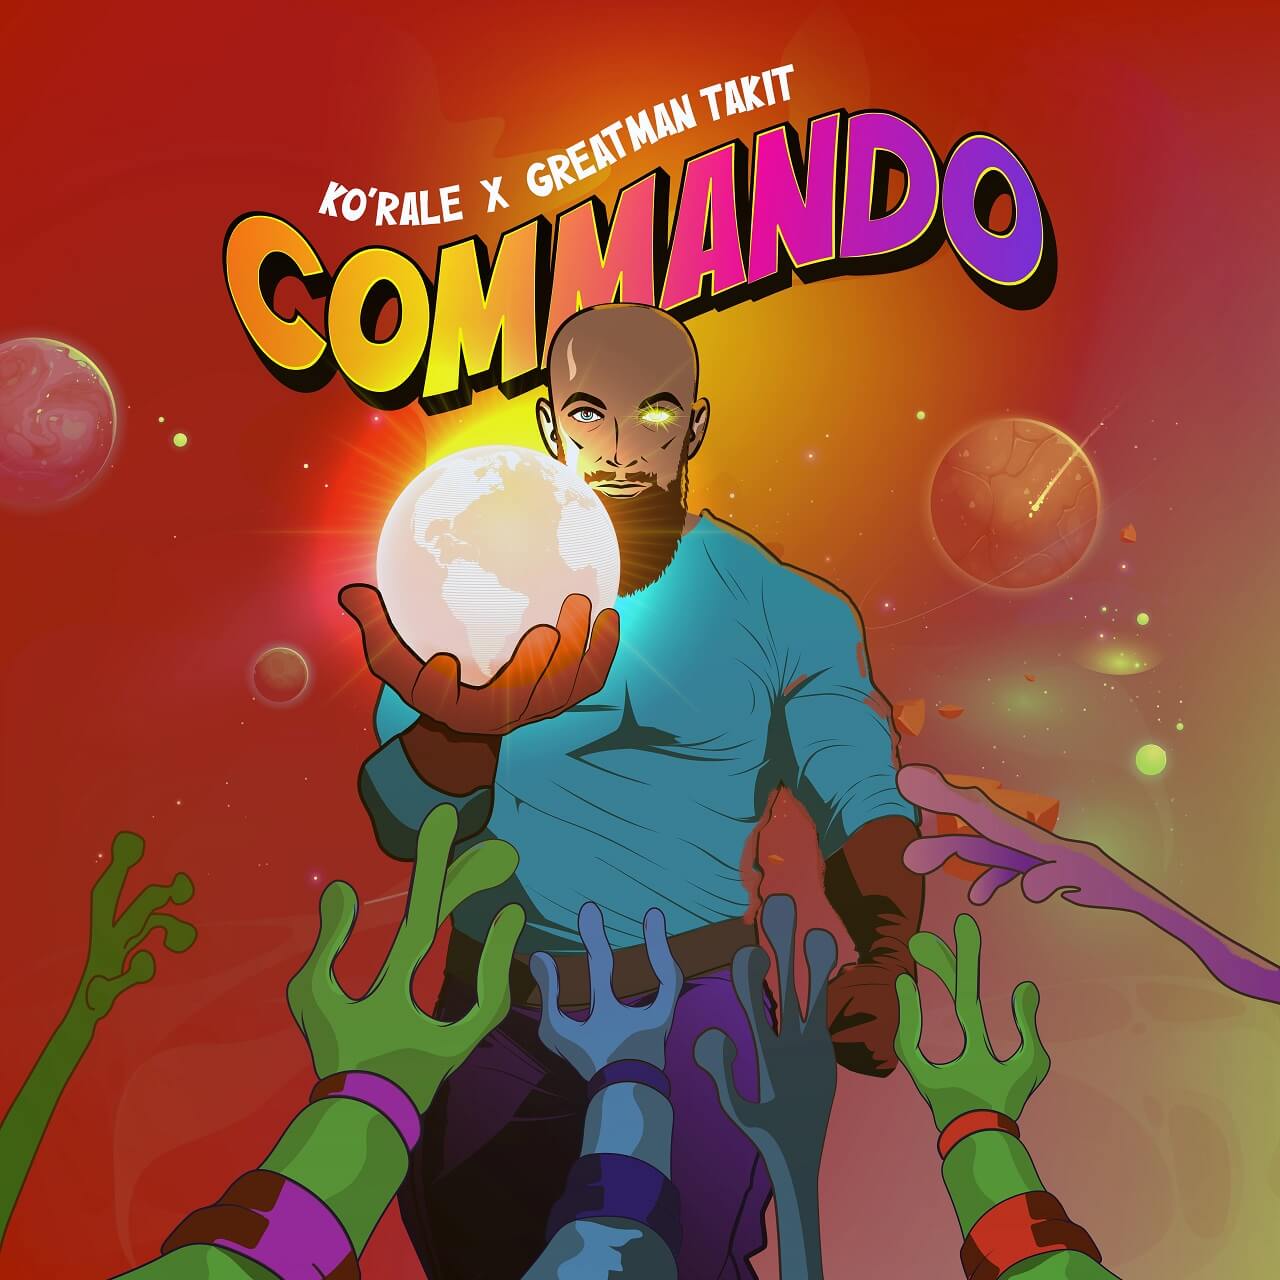 Commando-revised-min